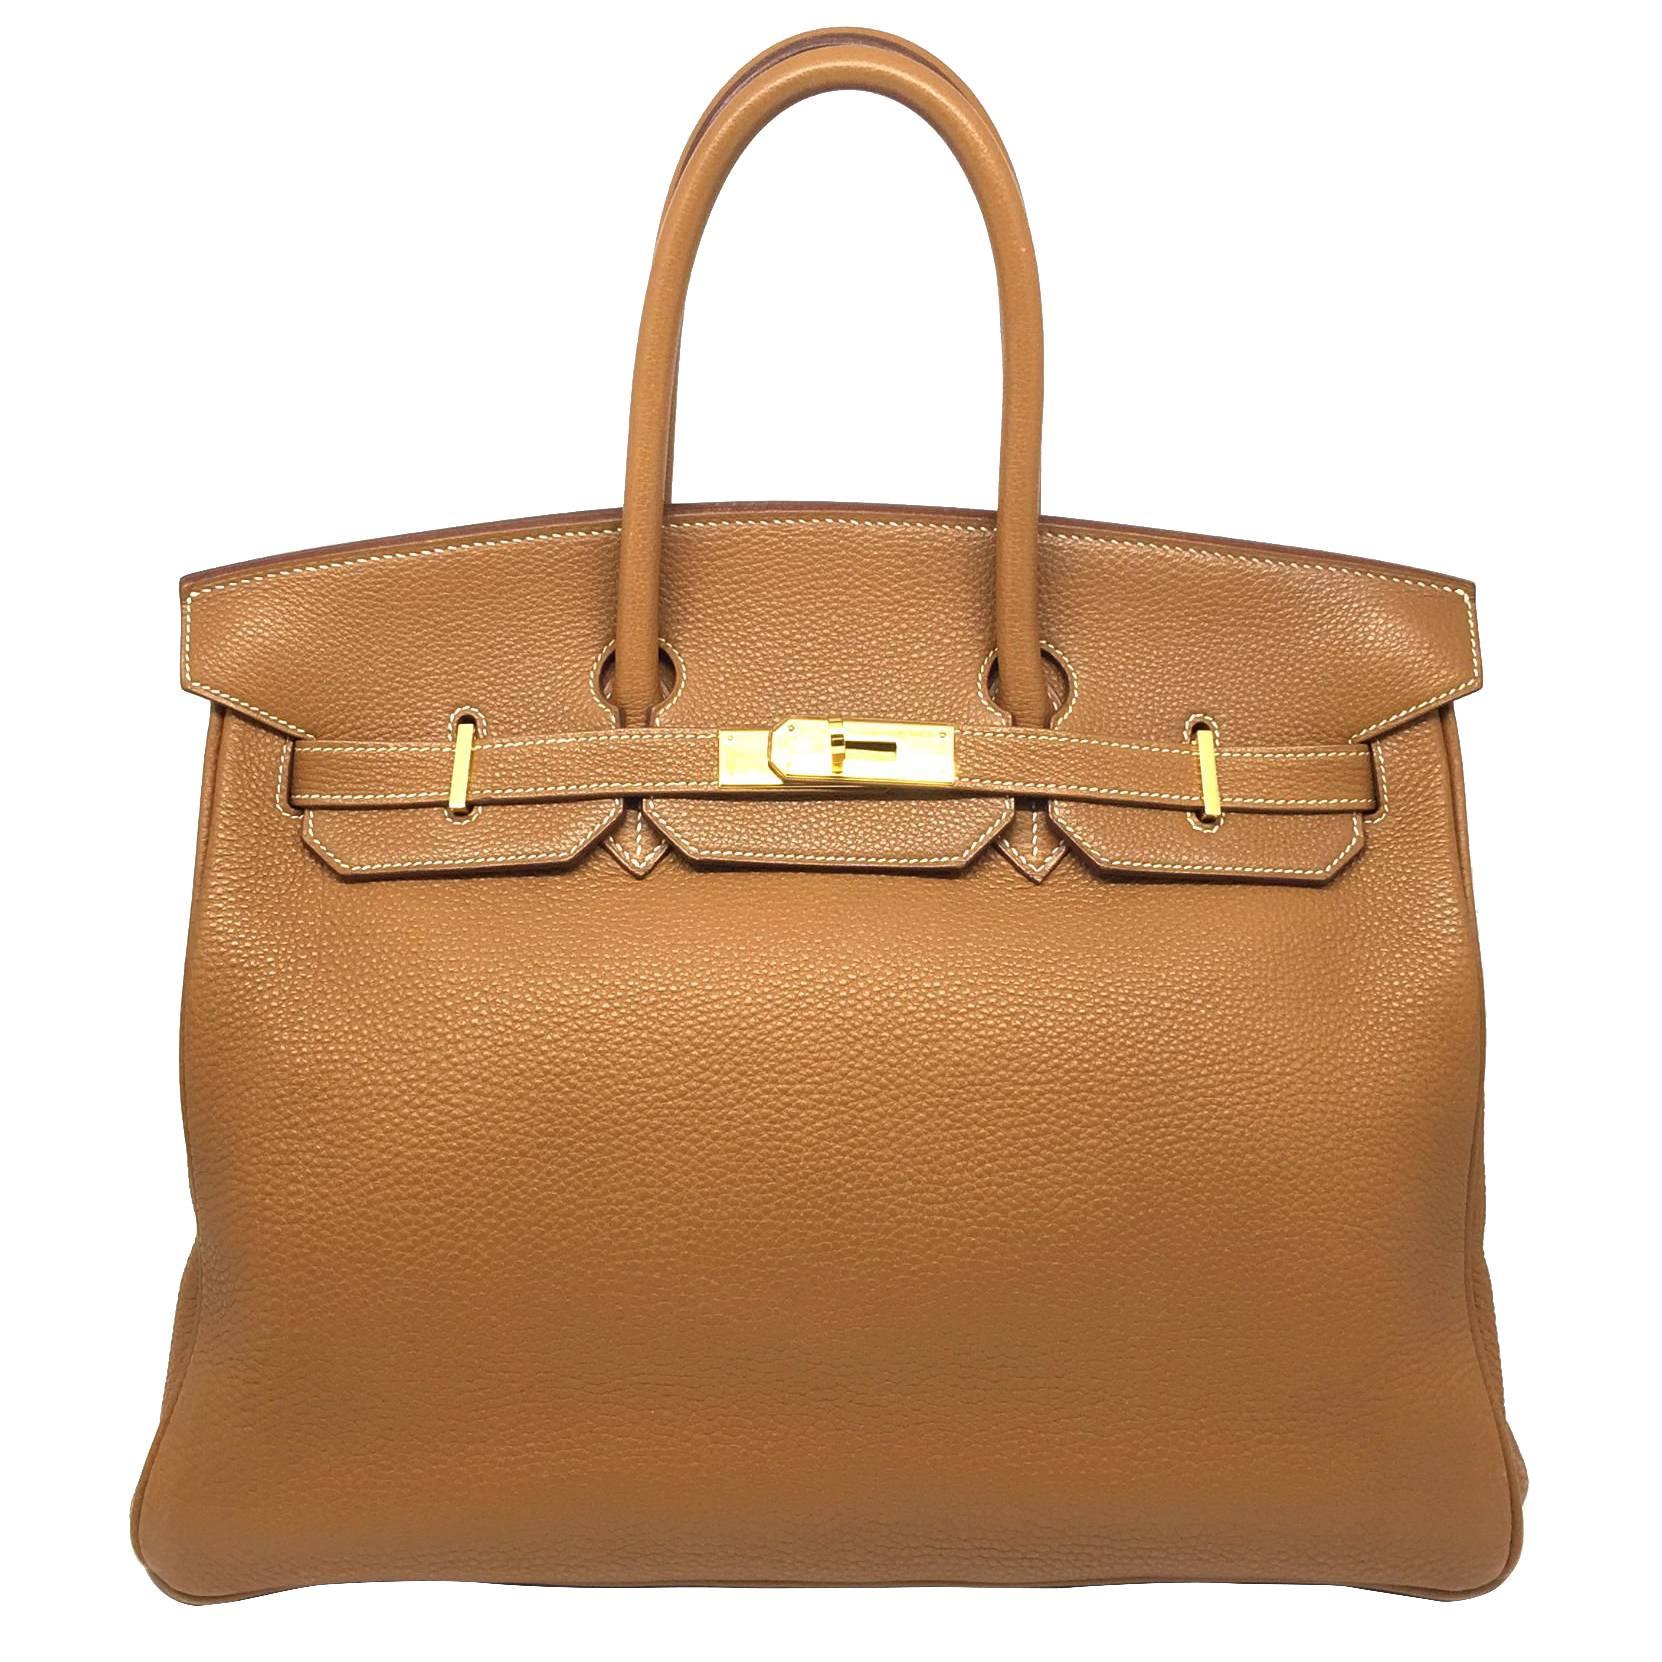 Hermes Birkin 35 Gold Togo Leather GHW Top Handle Bag For Sale